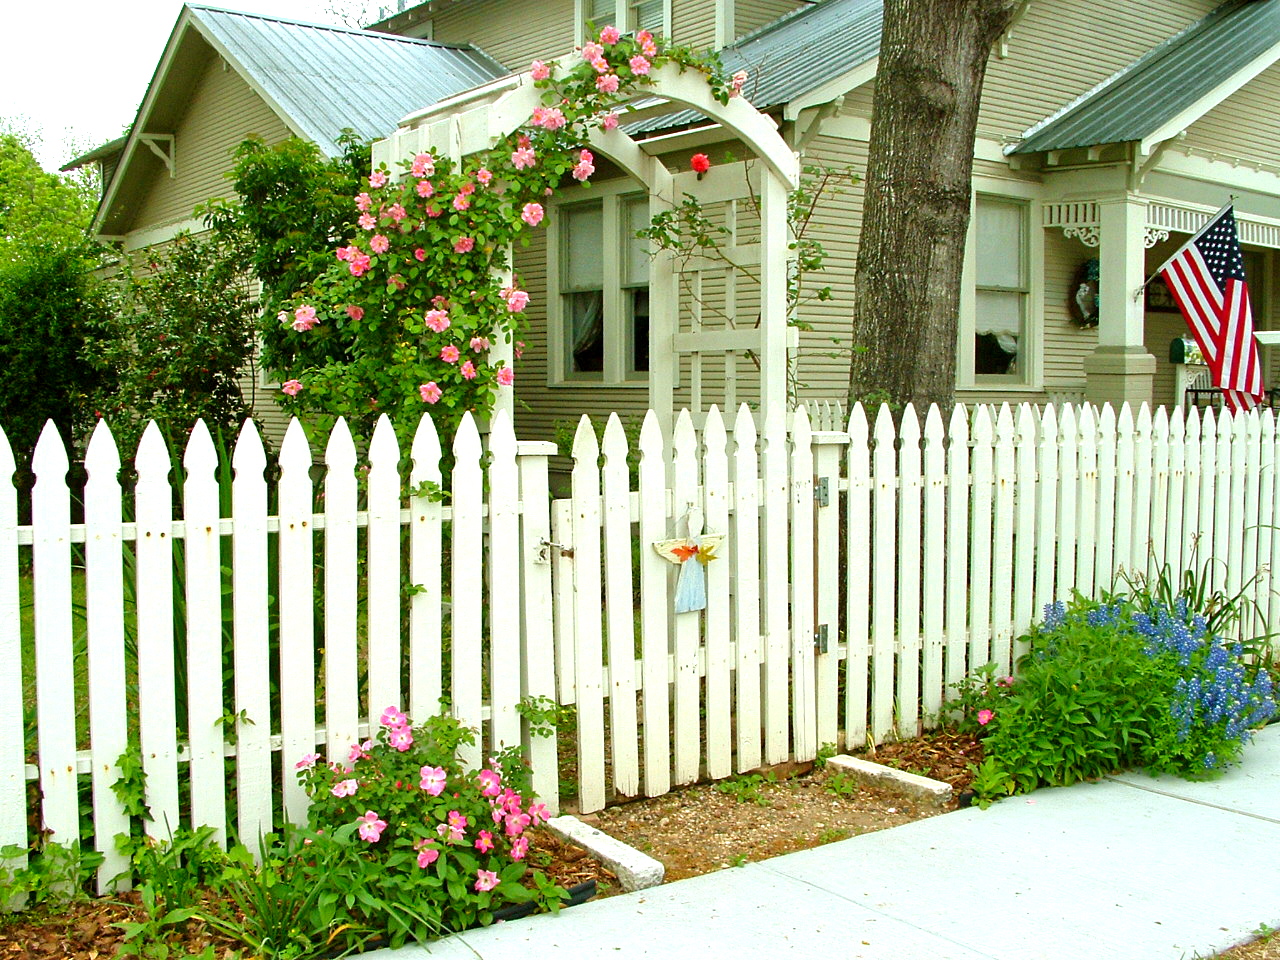 The Brenham House: White Picket Fences in Brenham, Texas